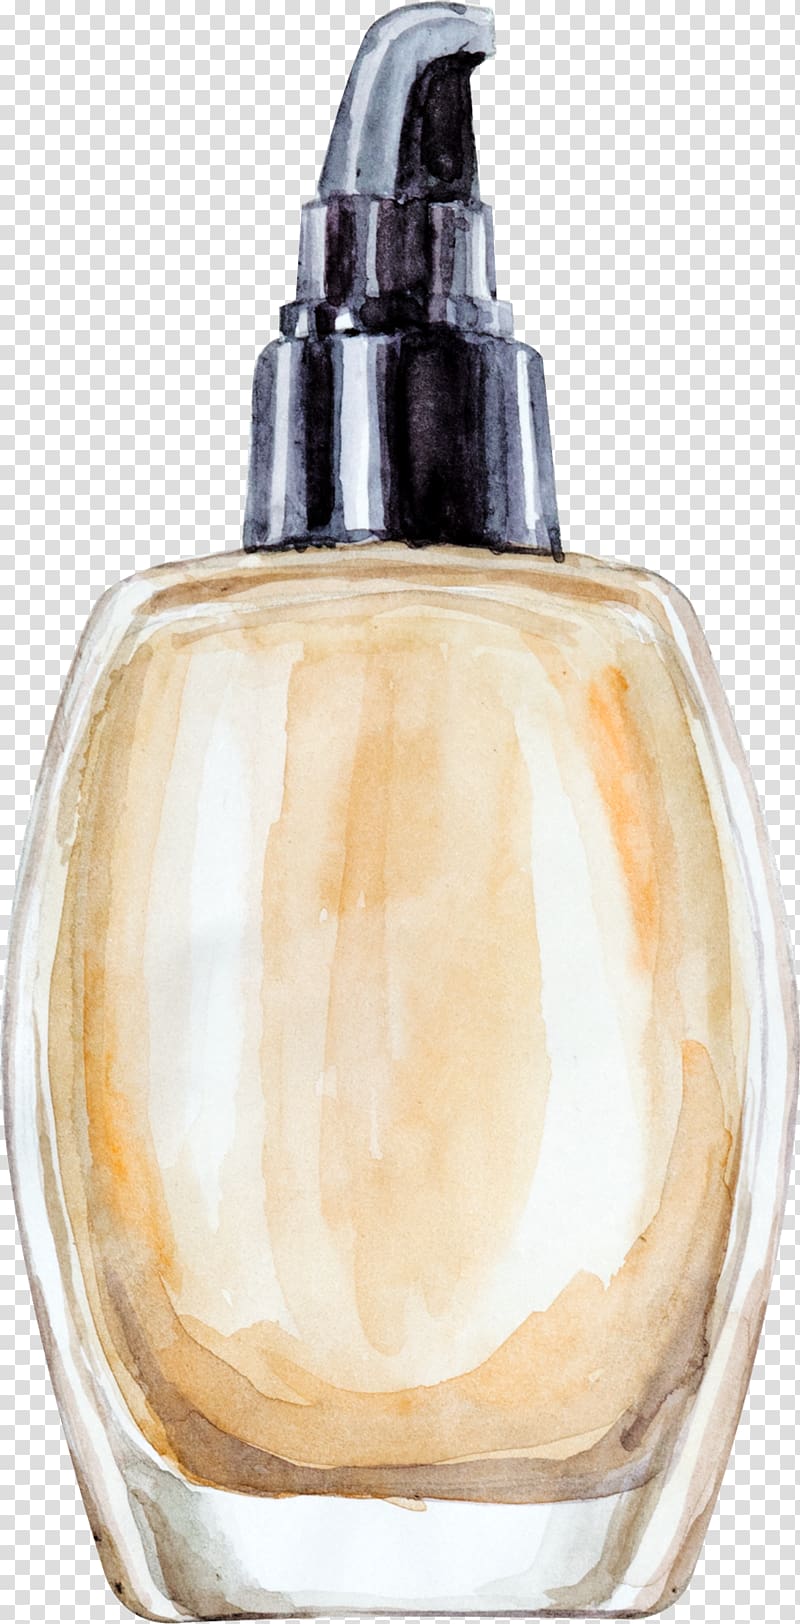 beige spray bottle illustration, Cosmetics Make-up, Makeup transparent background PNG clipart